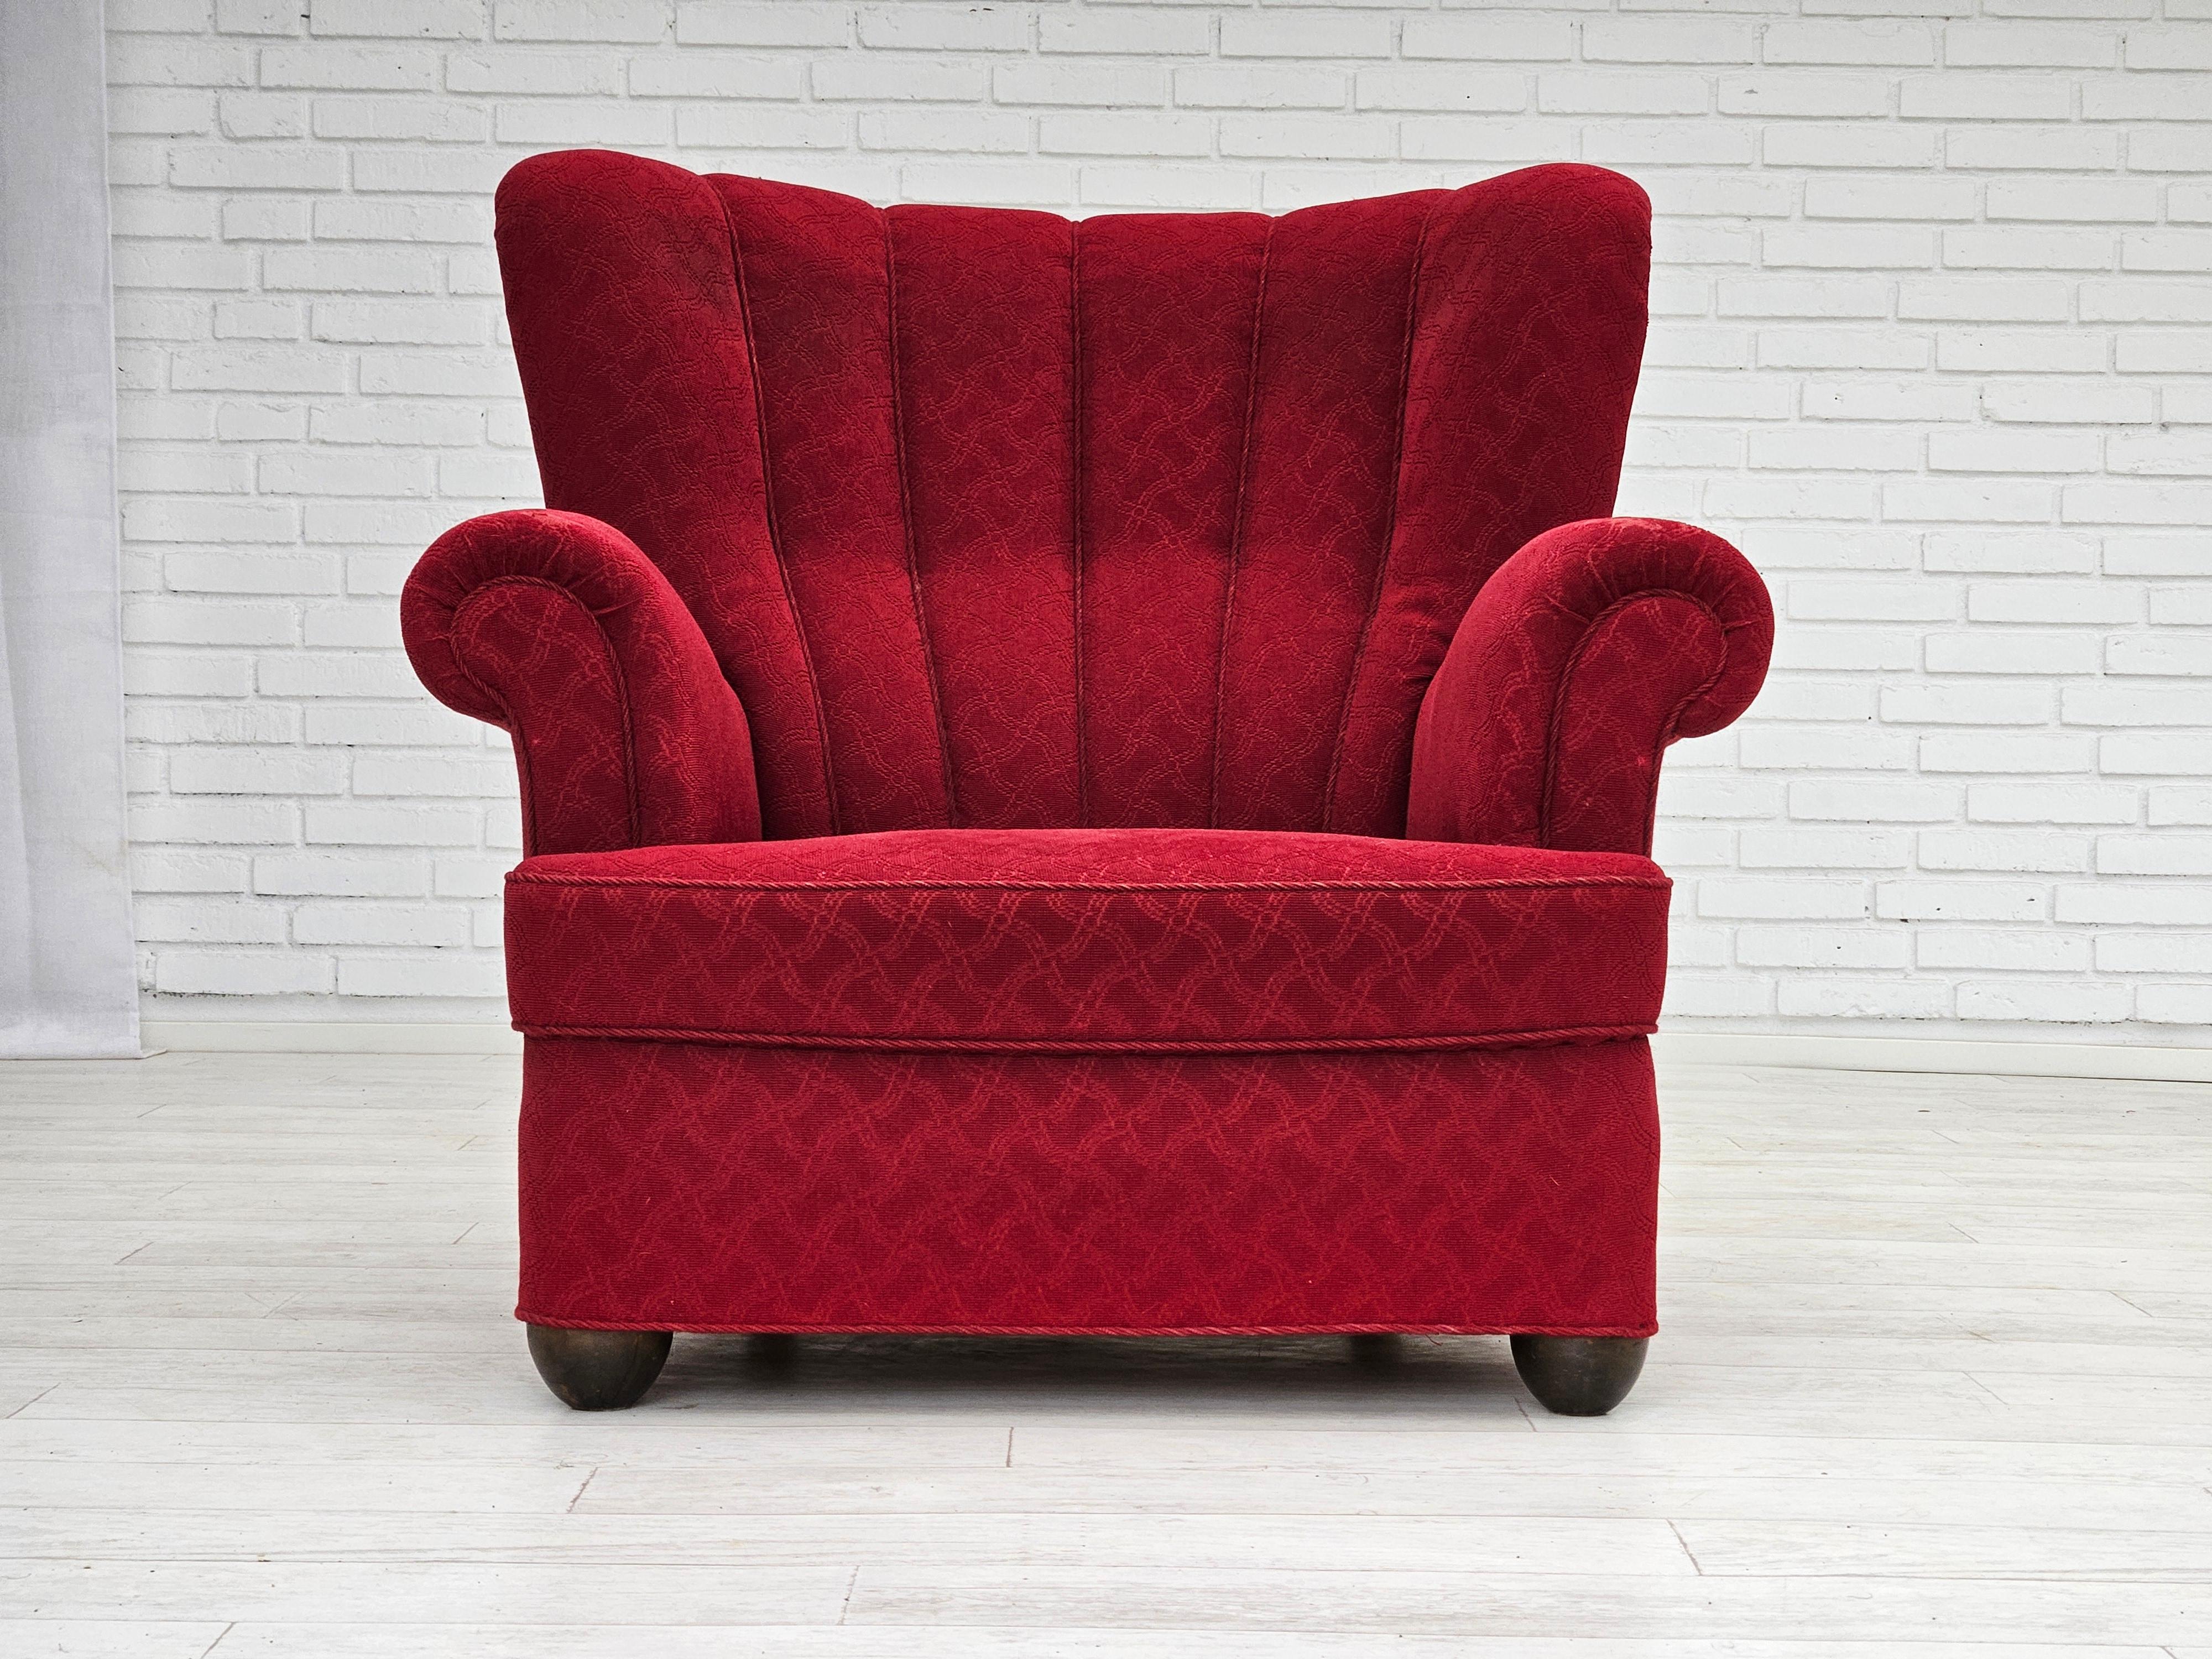 1960er Jahre, dänischer Relaxsessel in gutem Originalzustand: keine Gerüche und keine Flecken. Originaler roter Baumwoll-/Woll-Möbelstoff, Eichenholzbeine, Messingfedern in der Sitzfläche. Die Stoffoberfläche an der vorderen Armlehne ist leicht